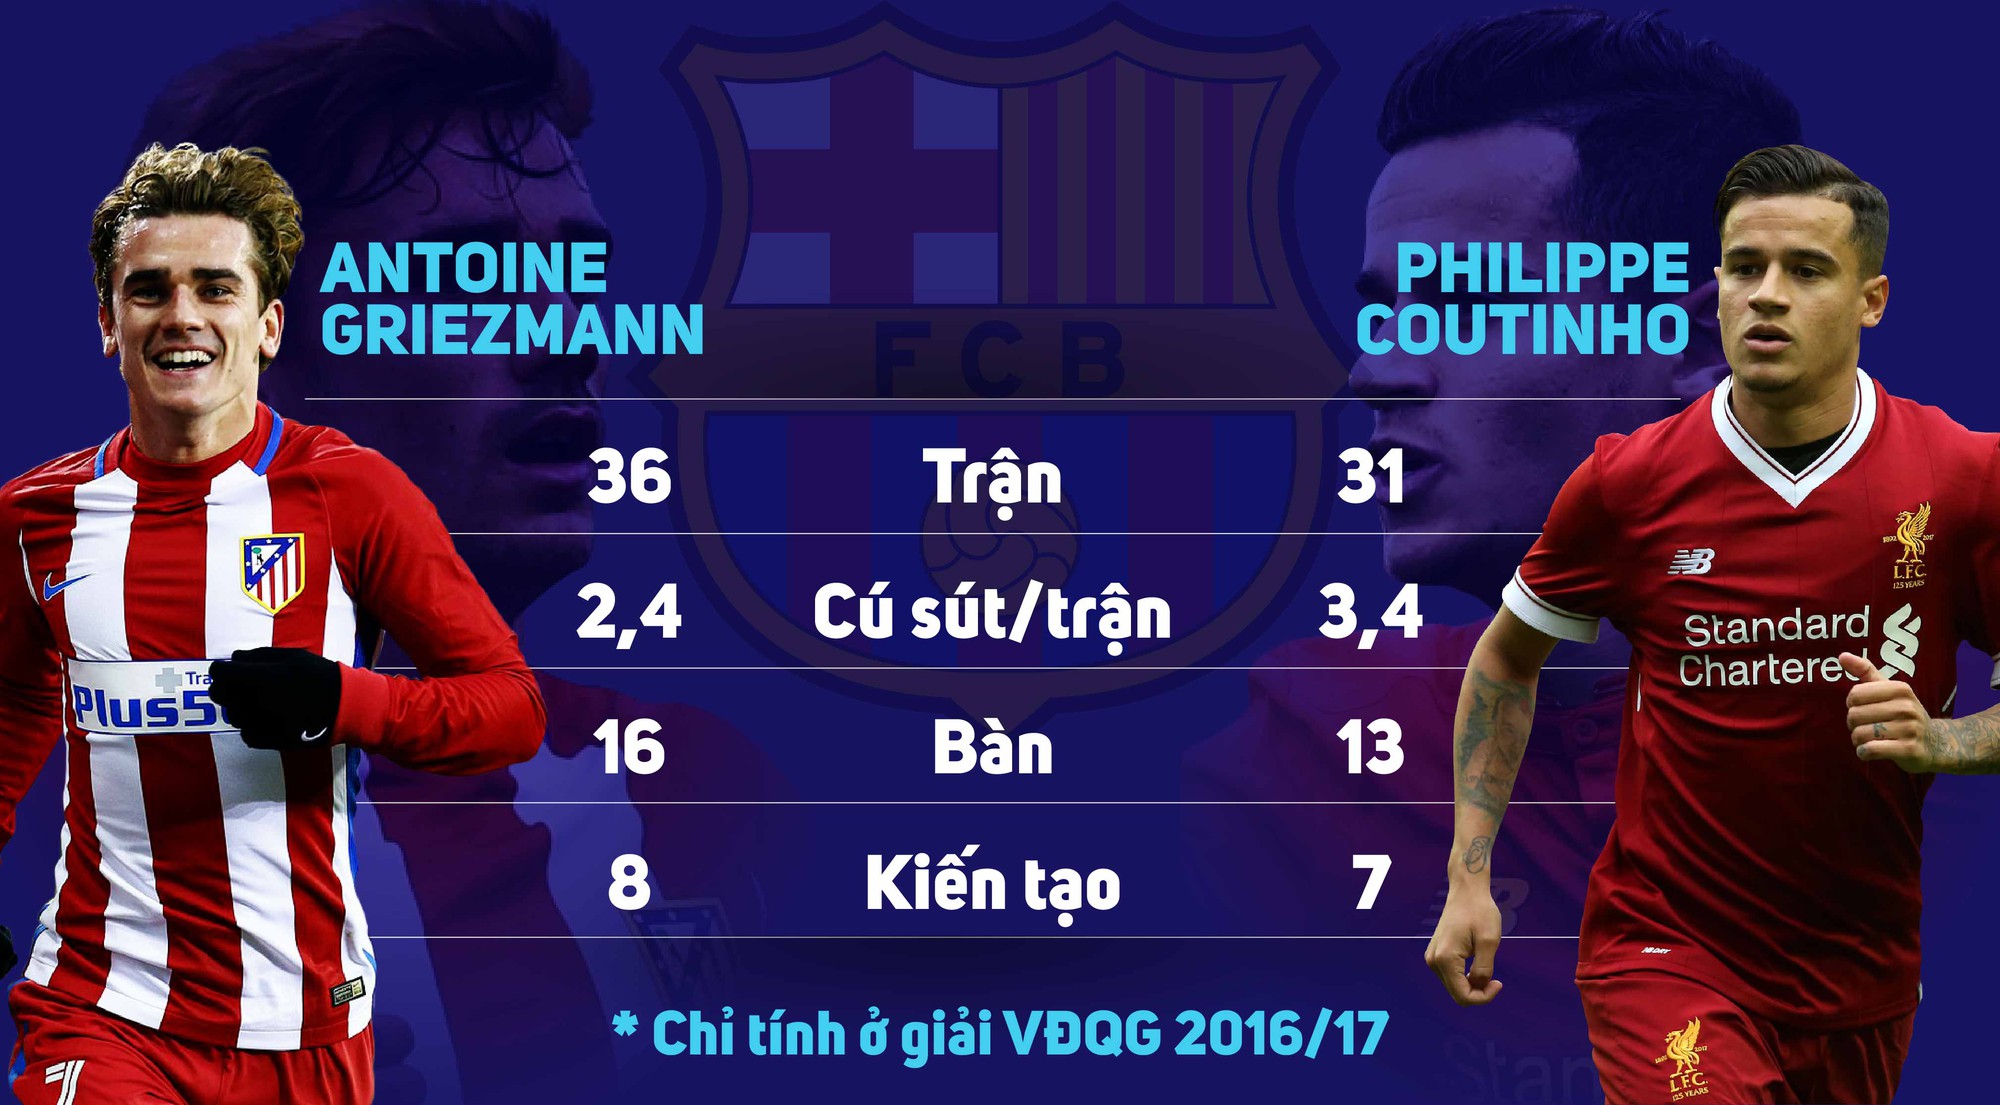 So sánh thông số của Griezmann và Coutinho ở mùa giải 2016/17